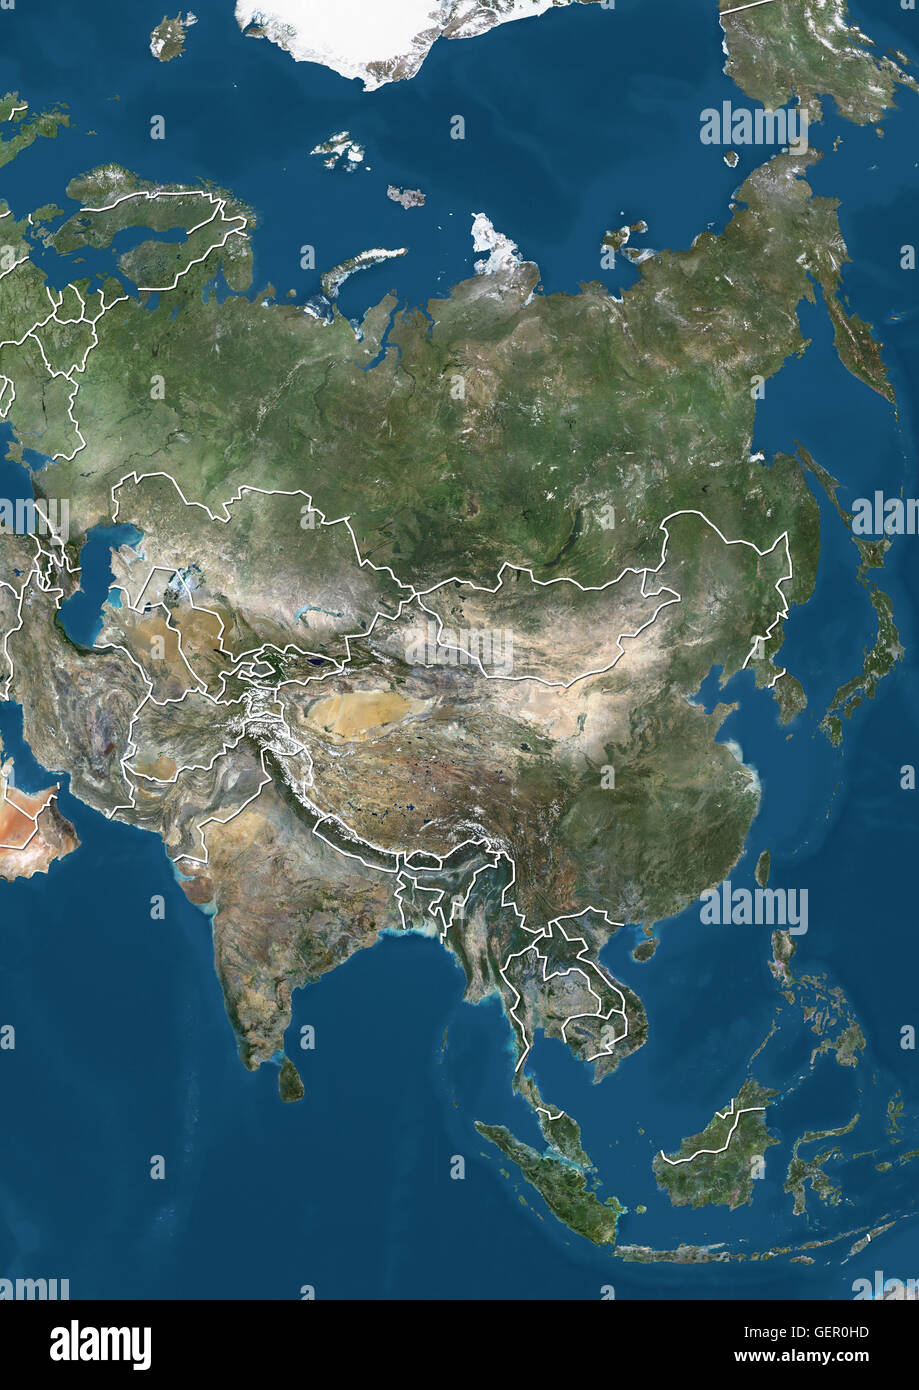 Vista satélite de Asia (con los límites del país). Esta imagen fue compilado a partir de datos adquiridos por los satélites Landsat 7 y 8. Foto de stock